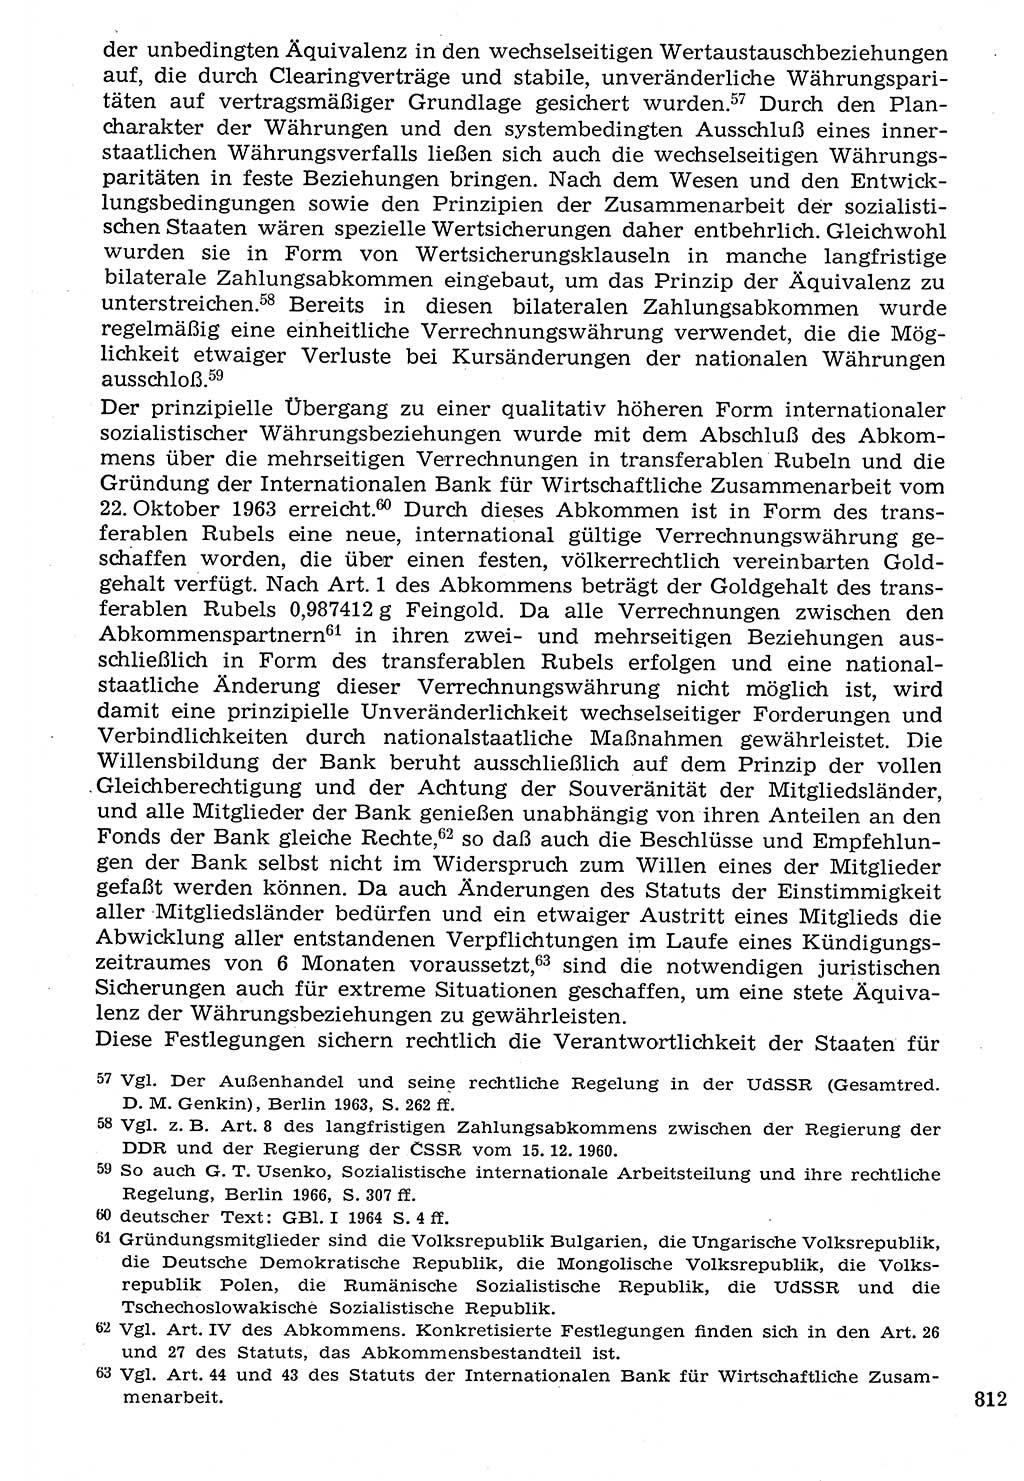 Staat und Recht (StuR), 17. Jahrgang [Deutsche Demokratische Republik (DDR)] 1968, Seite 812 (StuR DDR 1968, S. 812)